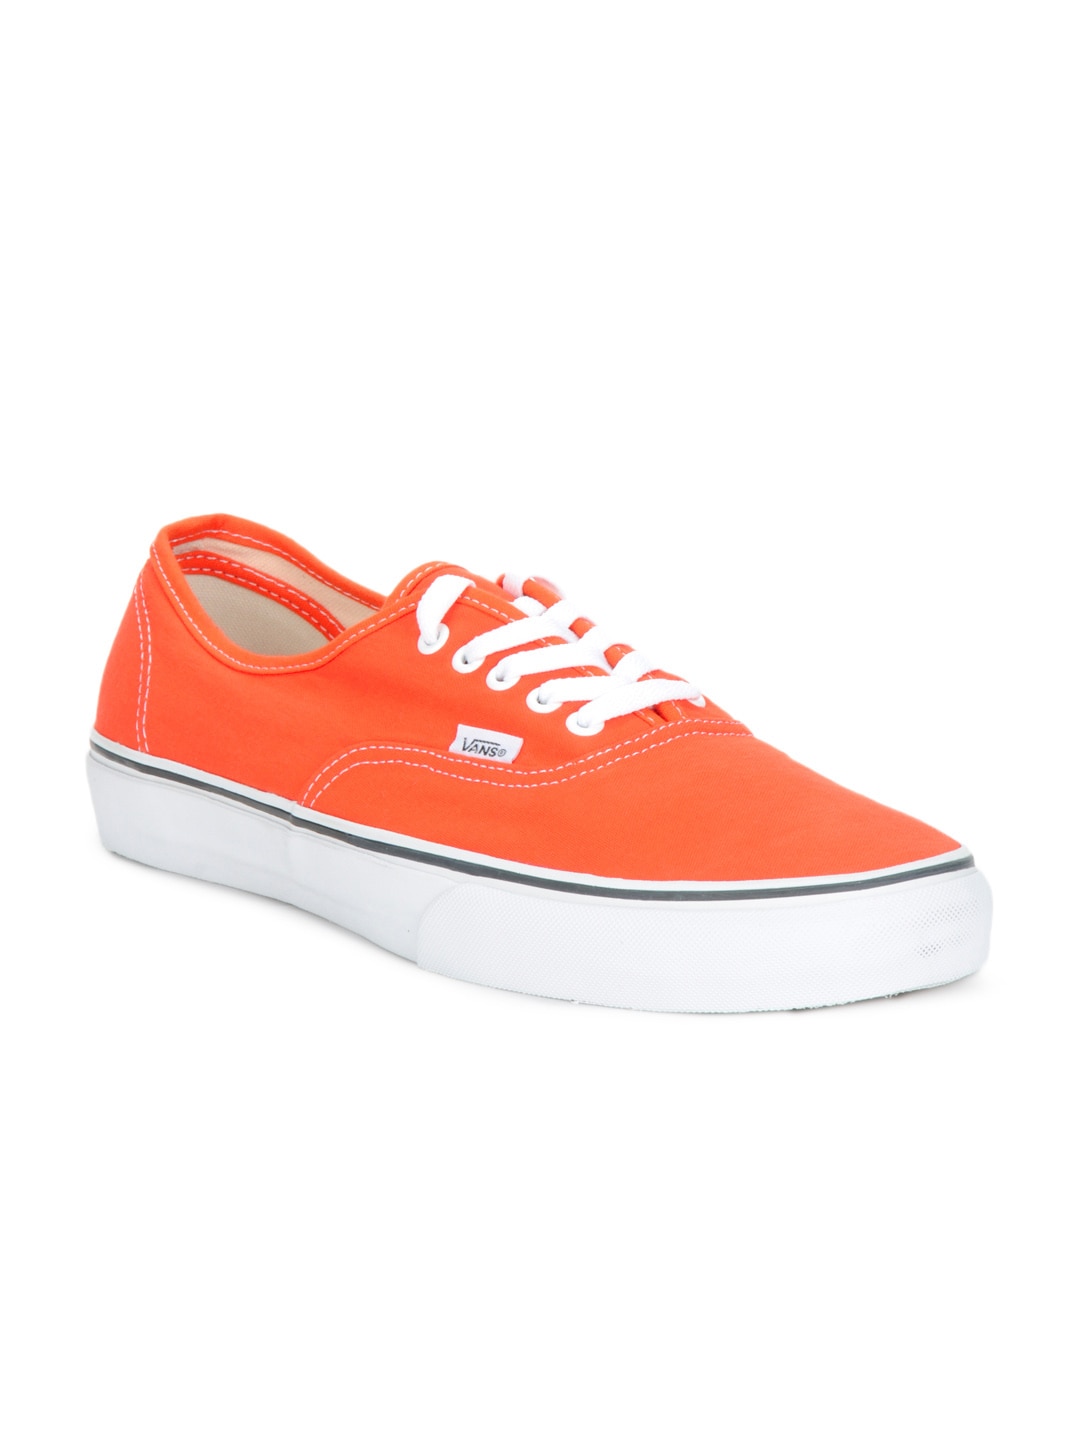 Vans Unisex Orange Authentic Shoes